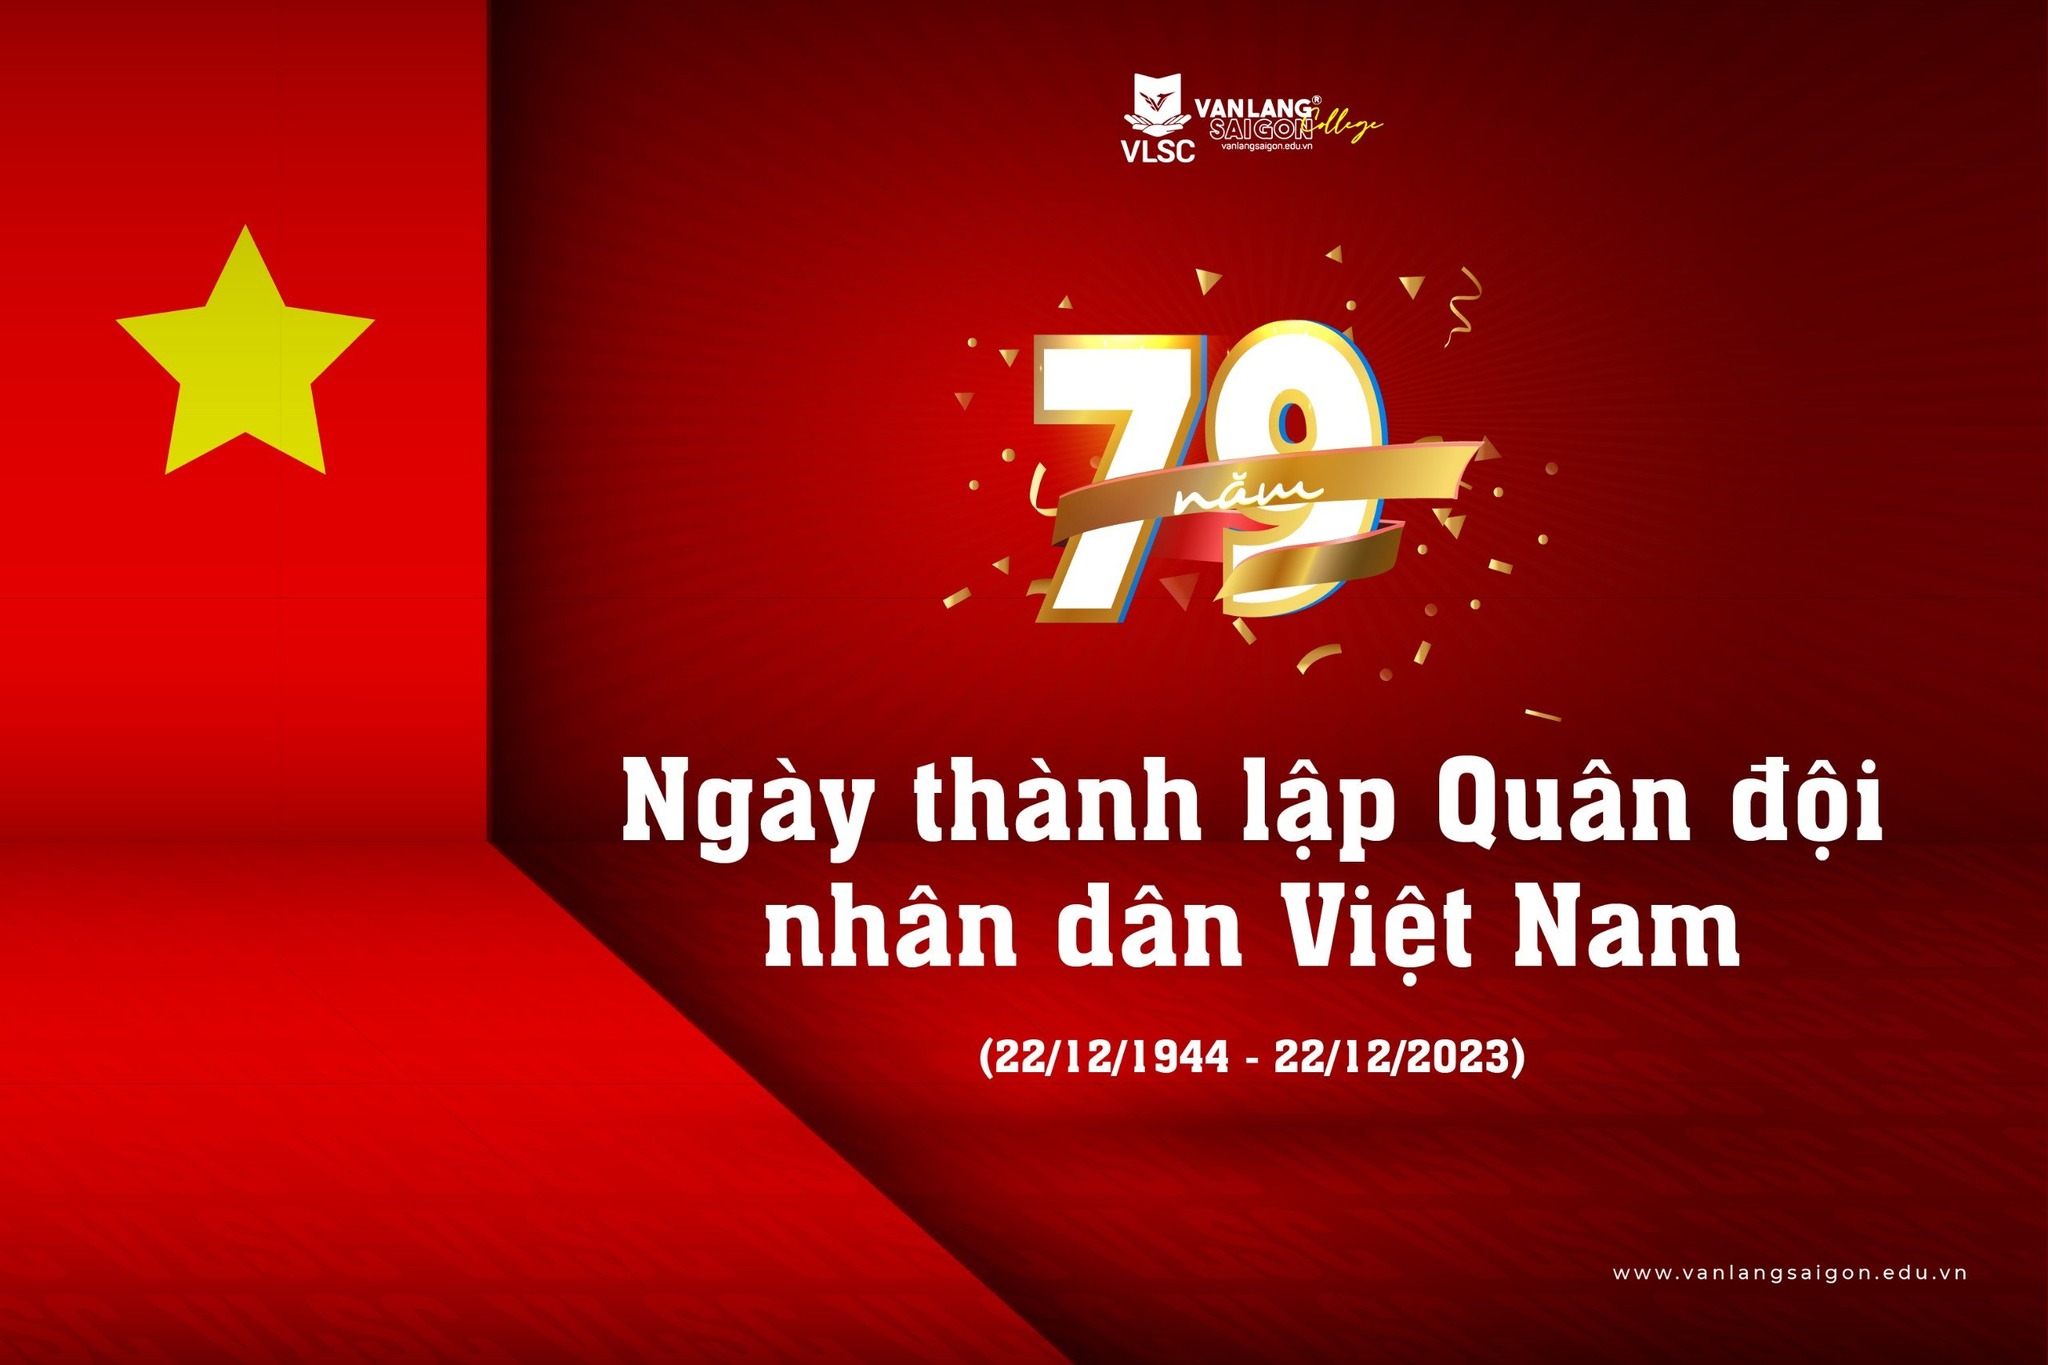 Chào mừng kỷ niệm 79 năm ngày thành lập Quân đội Nhân dân Việt Nam (22/12/1944 - 22/12/2023)